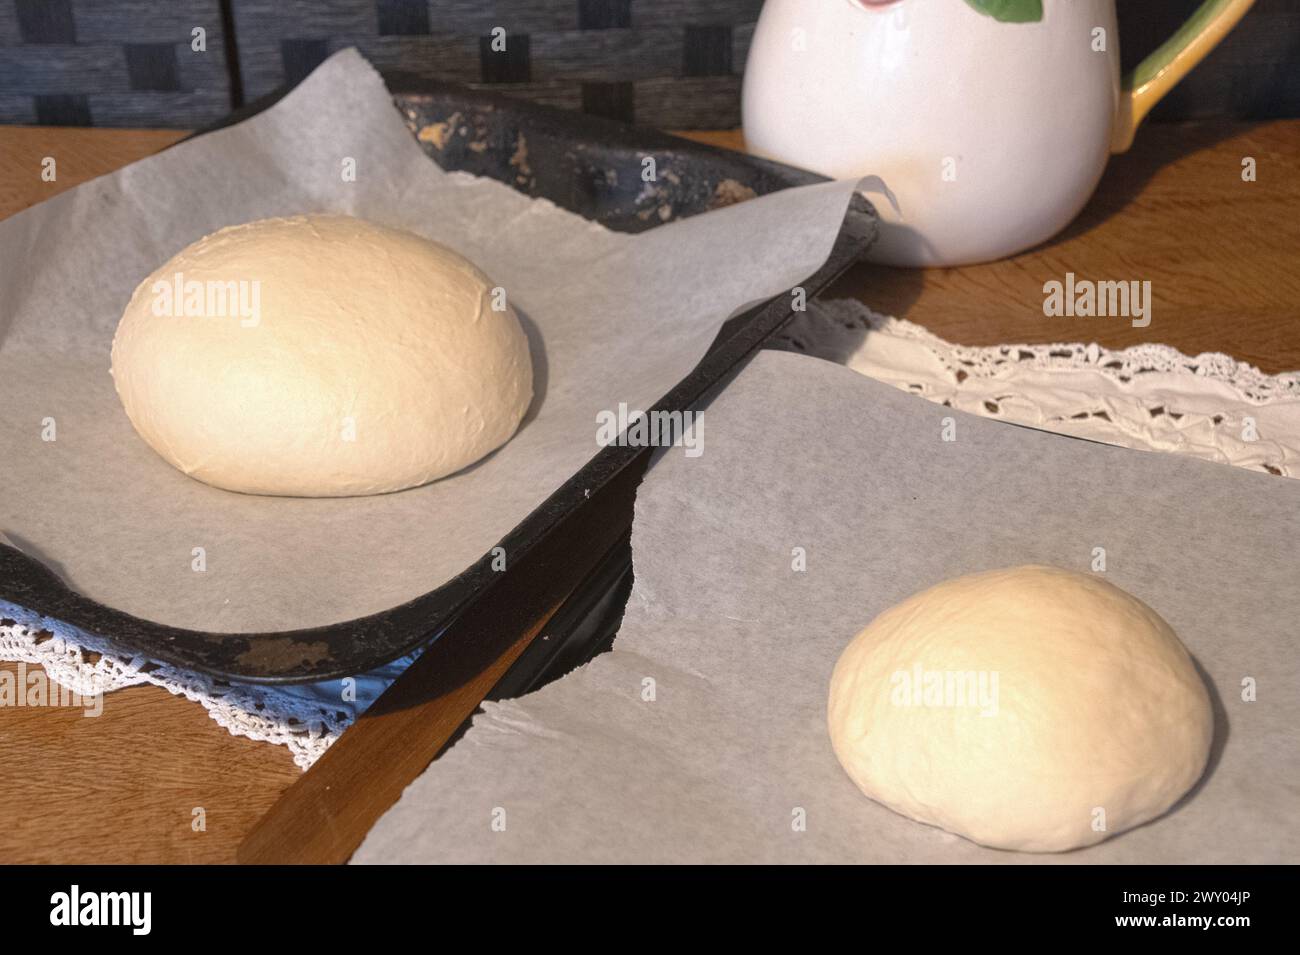 Preparar masa de pan fresco de cabaña Foto de stock